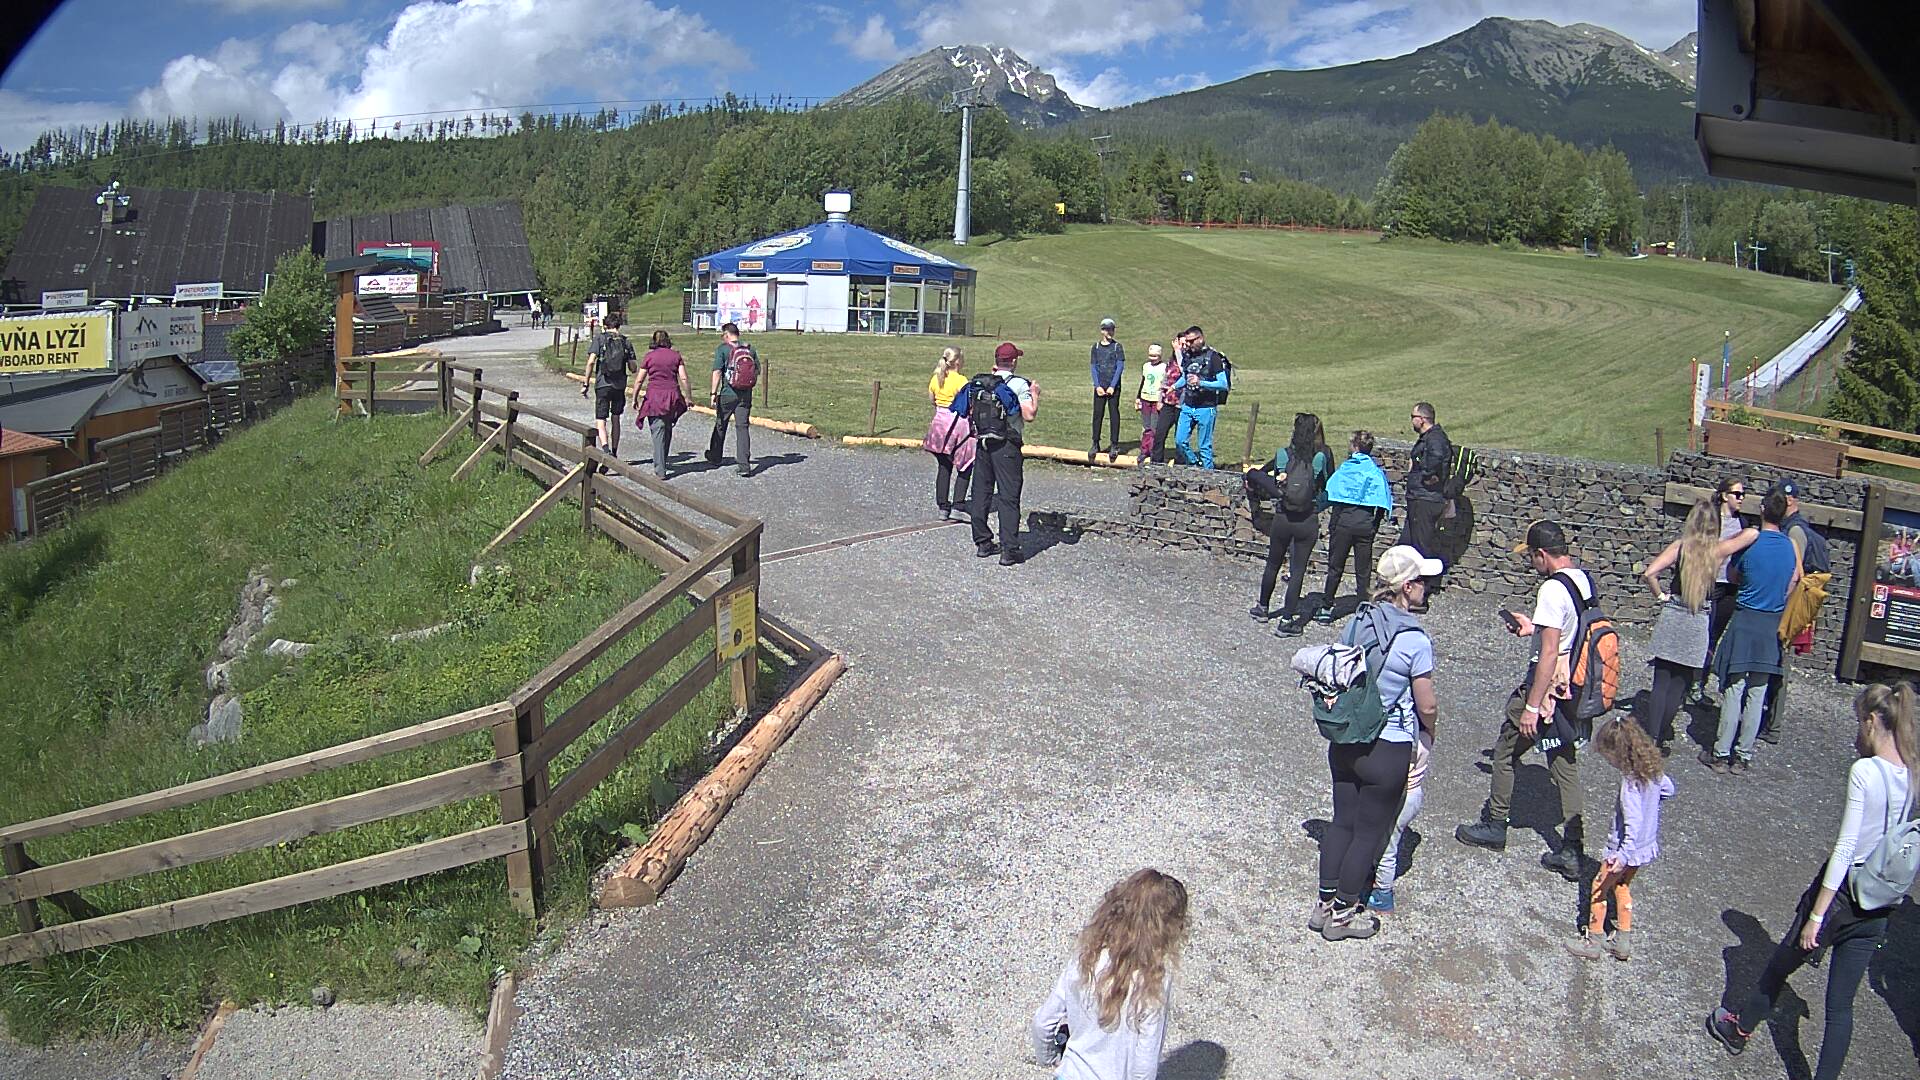 High Tatras tatranska Lomnica webcam - 